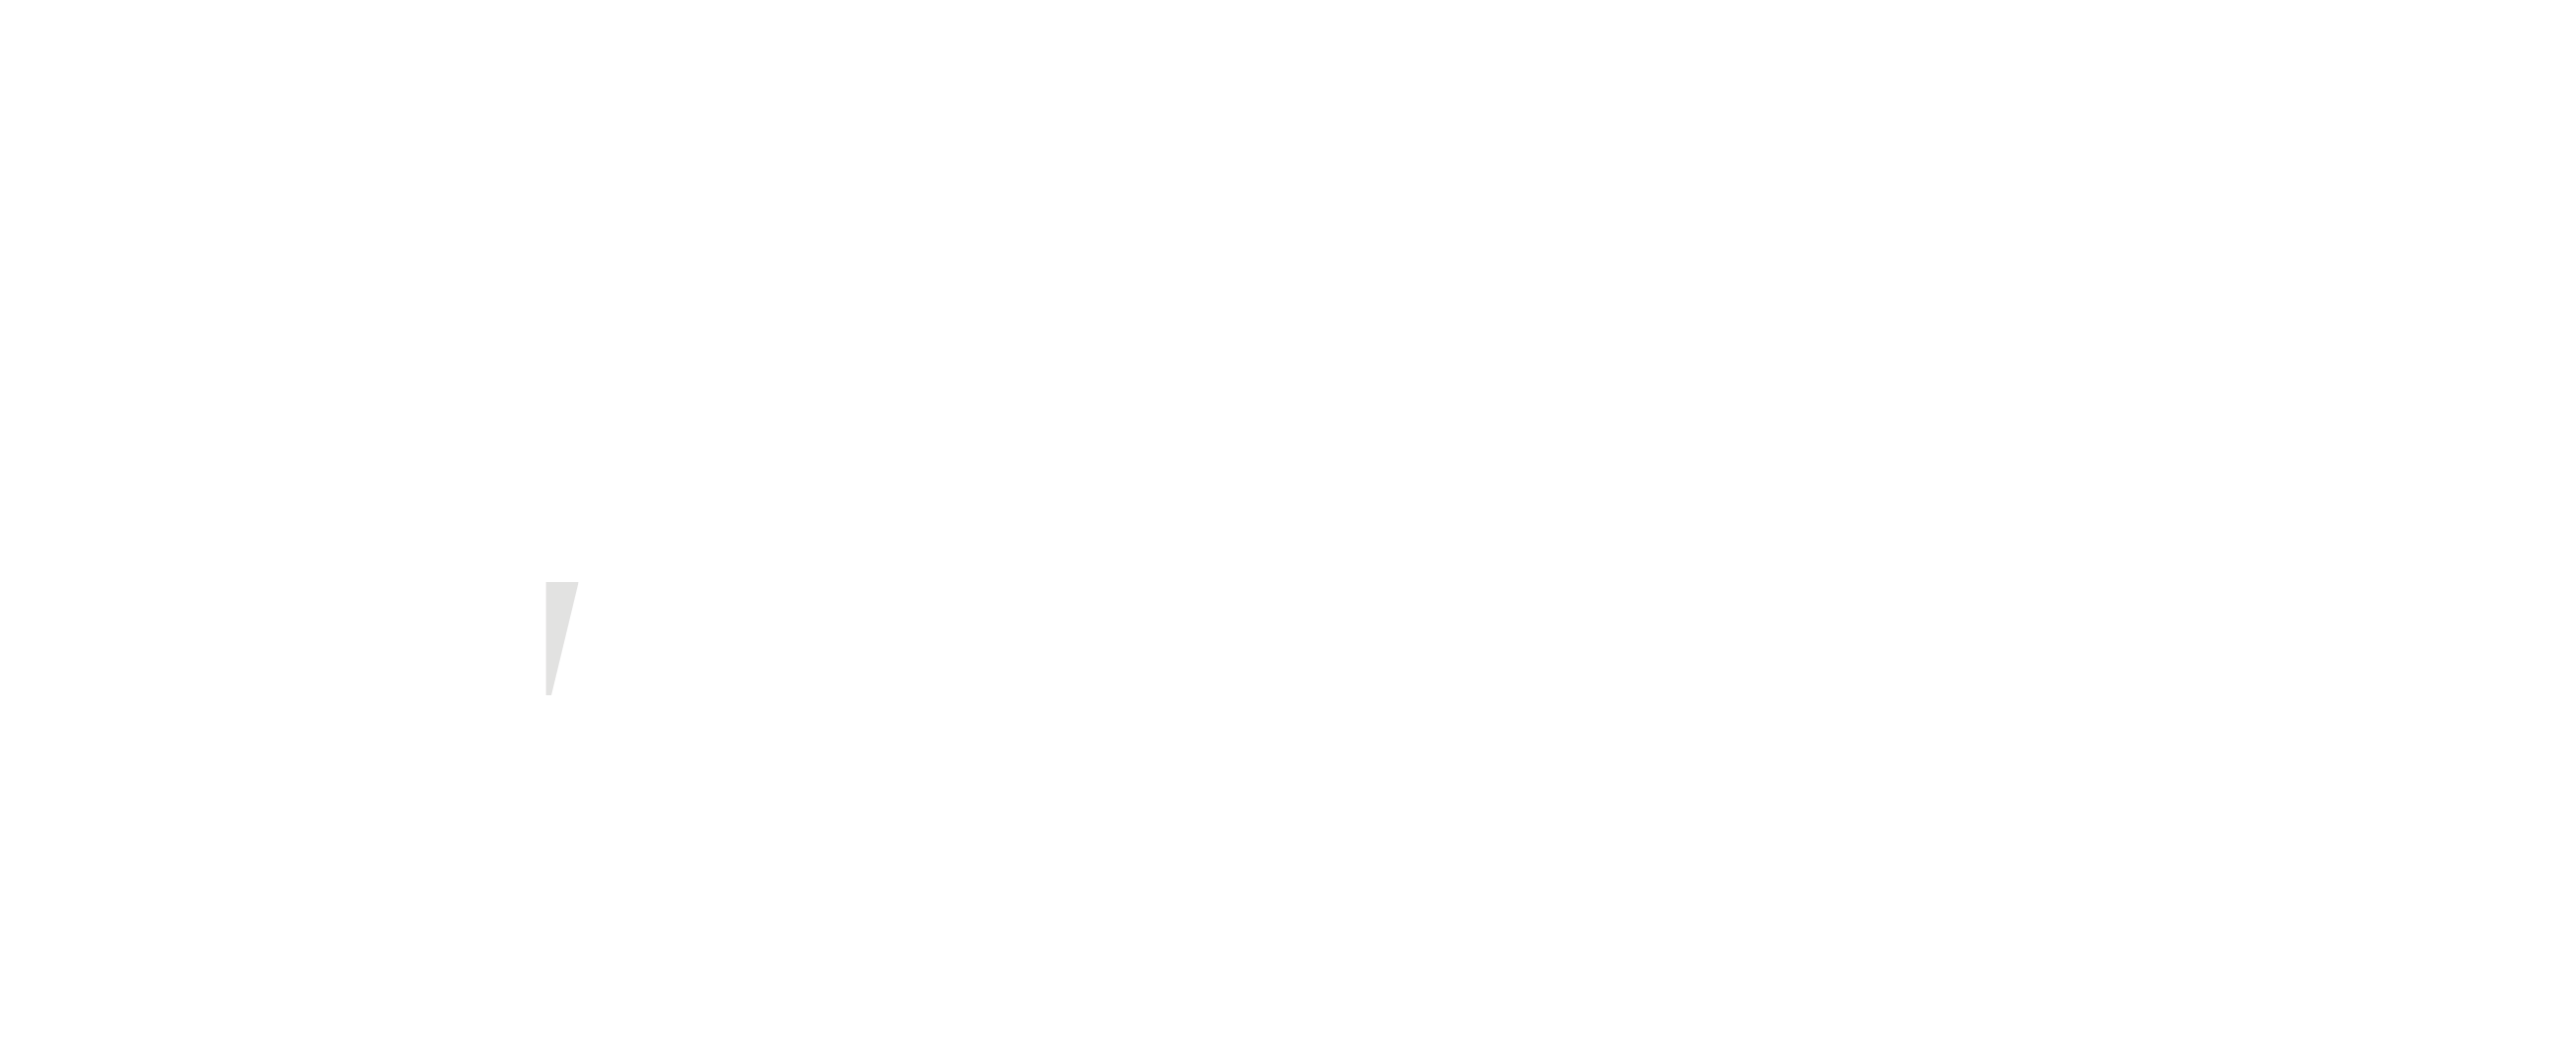 京セラ | JAPAN MADE